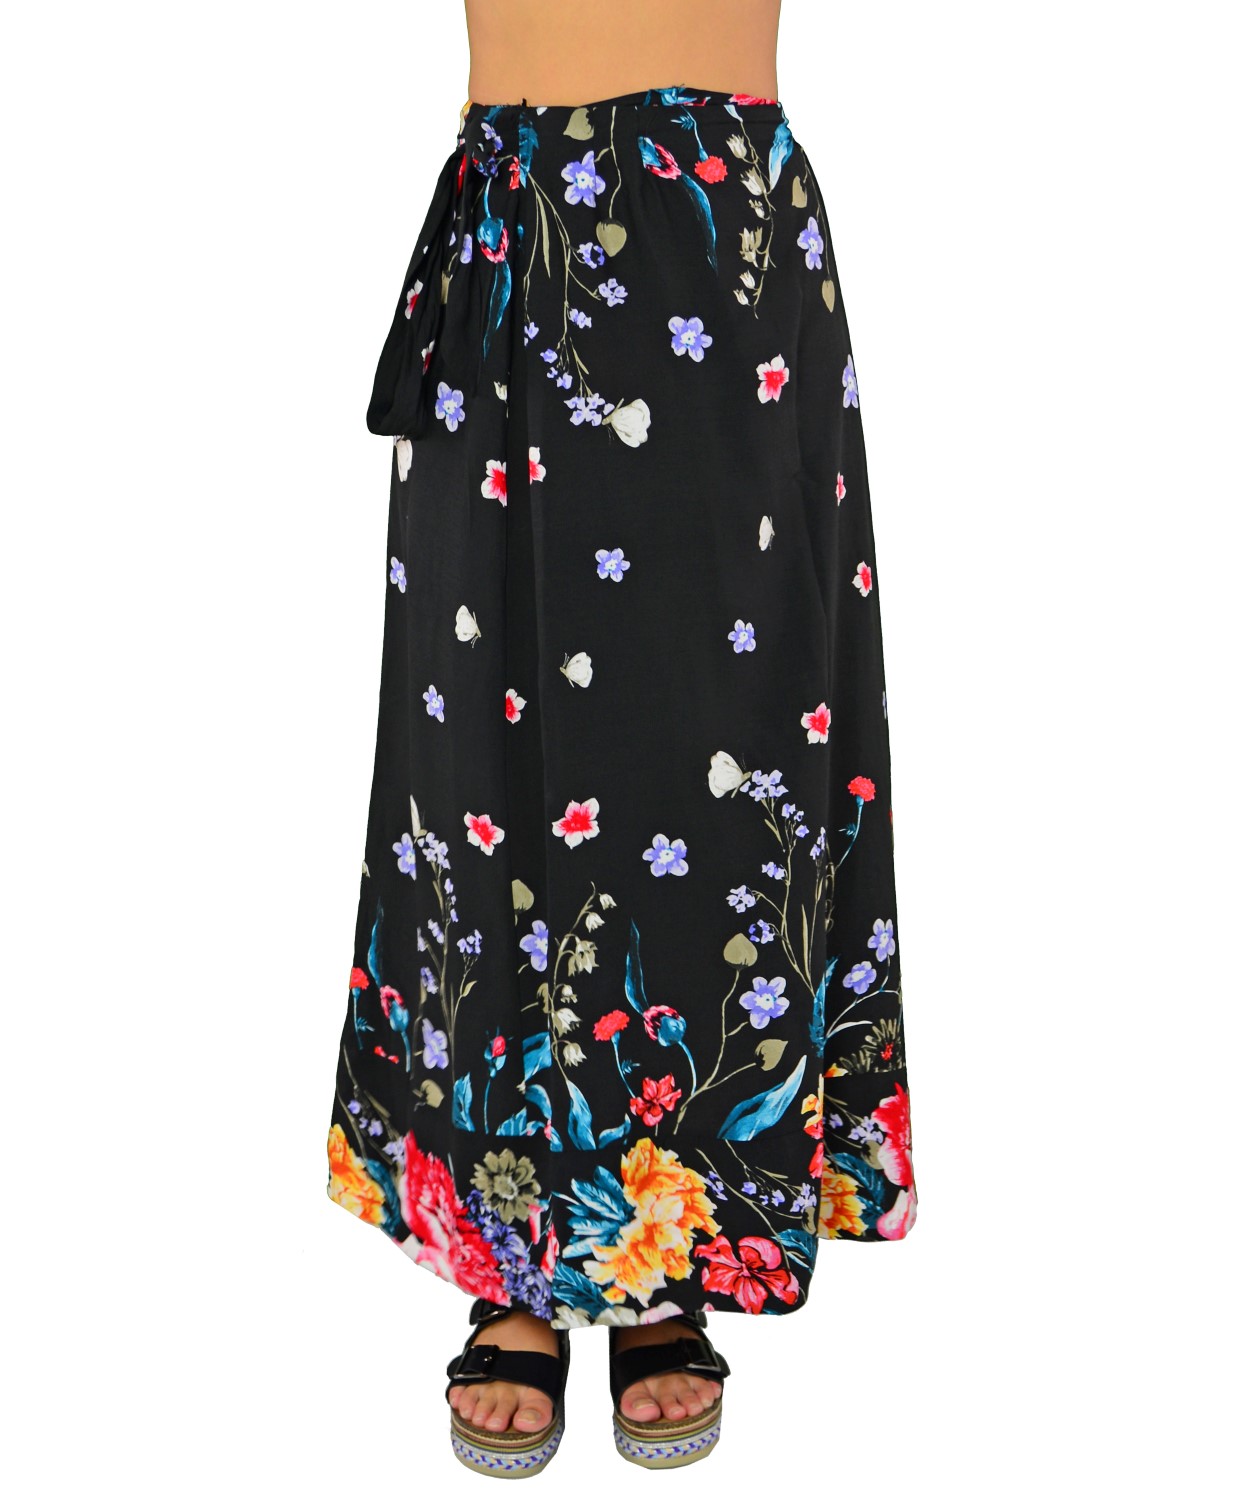 Γυναικεία φούστα μαύρη floral 17501F